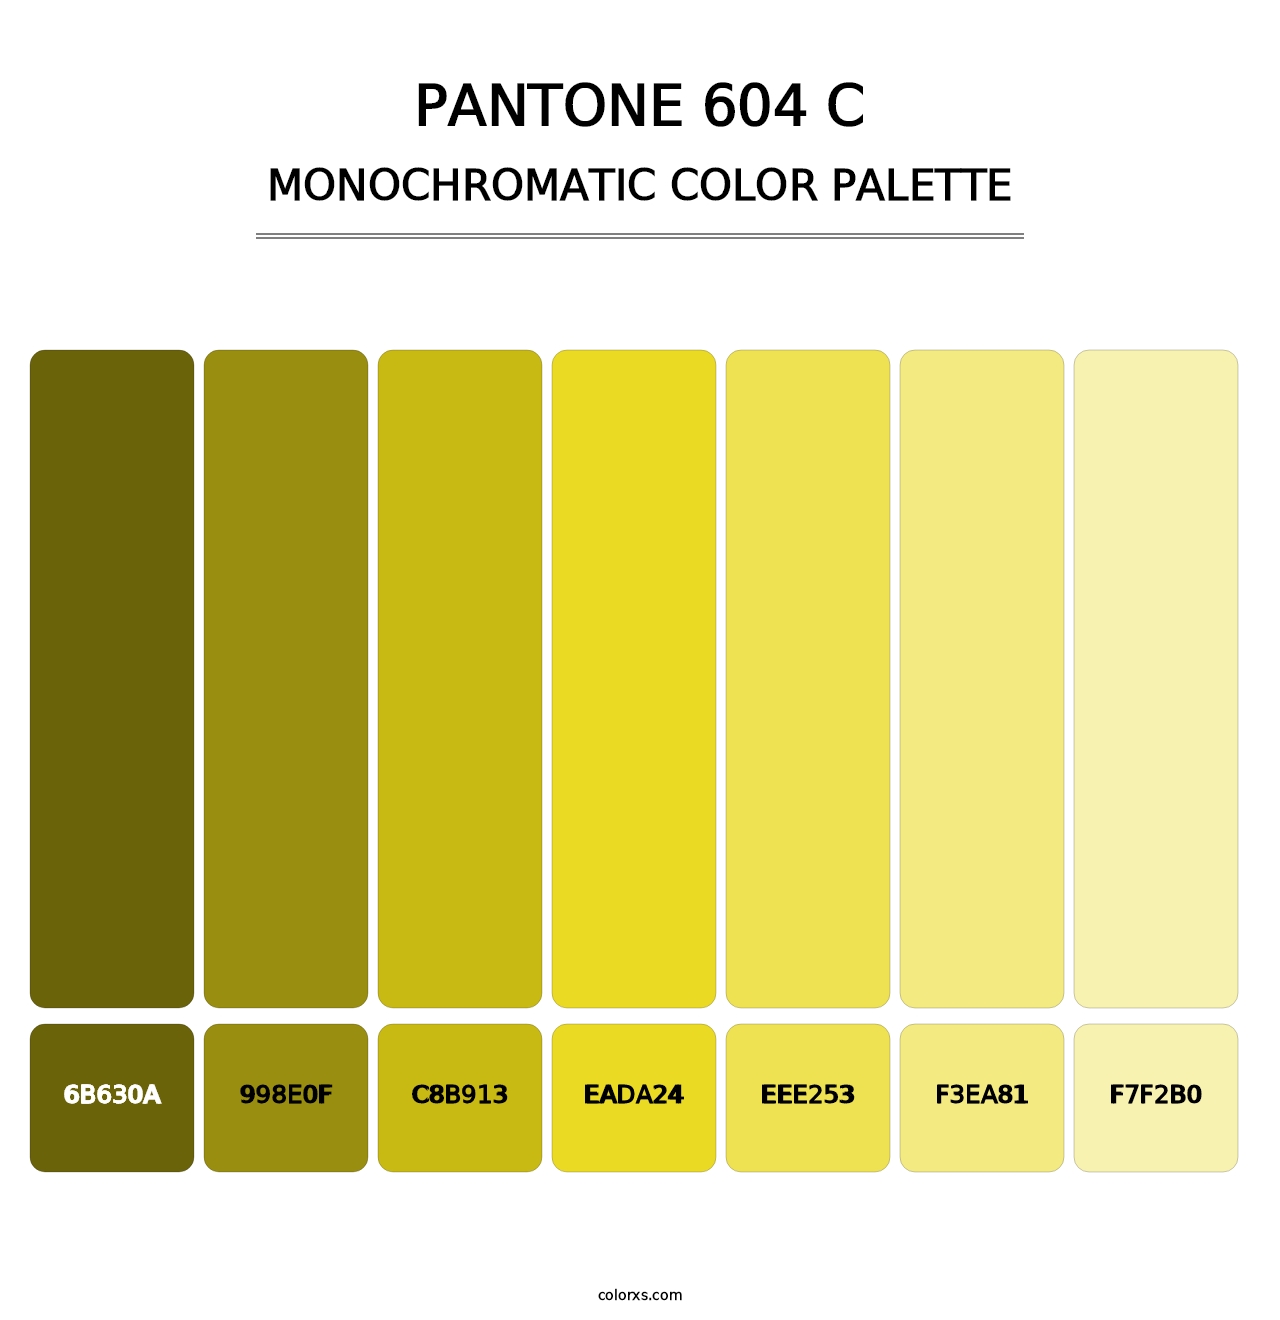 PANTONE 604 C - Monochromatic Color Palette